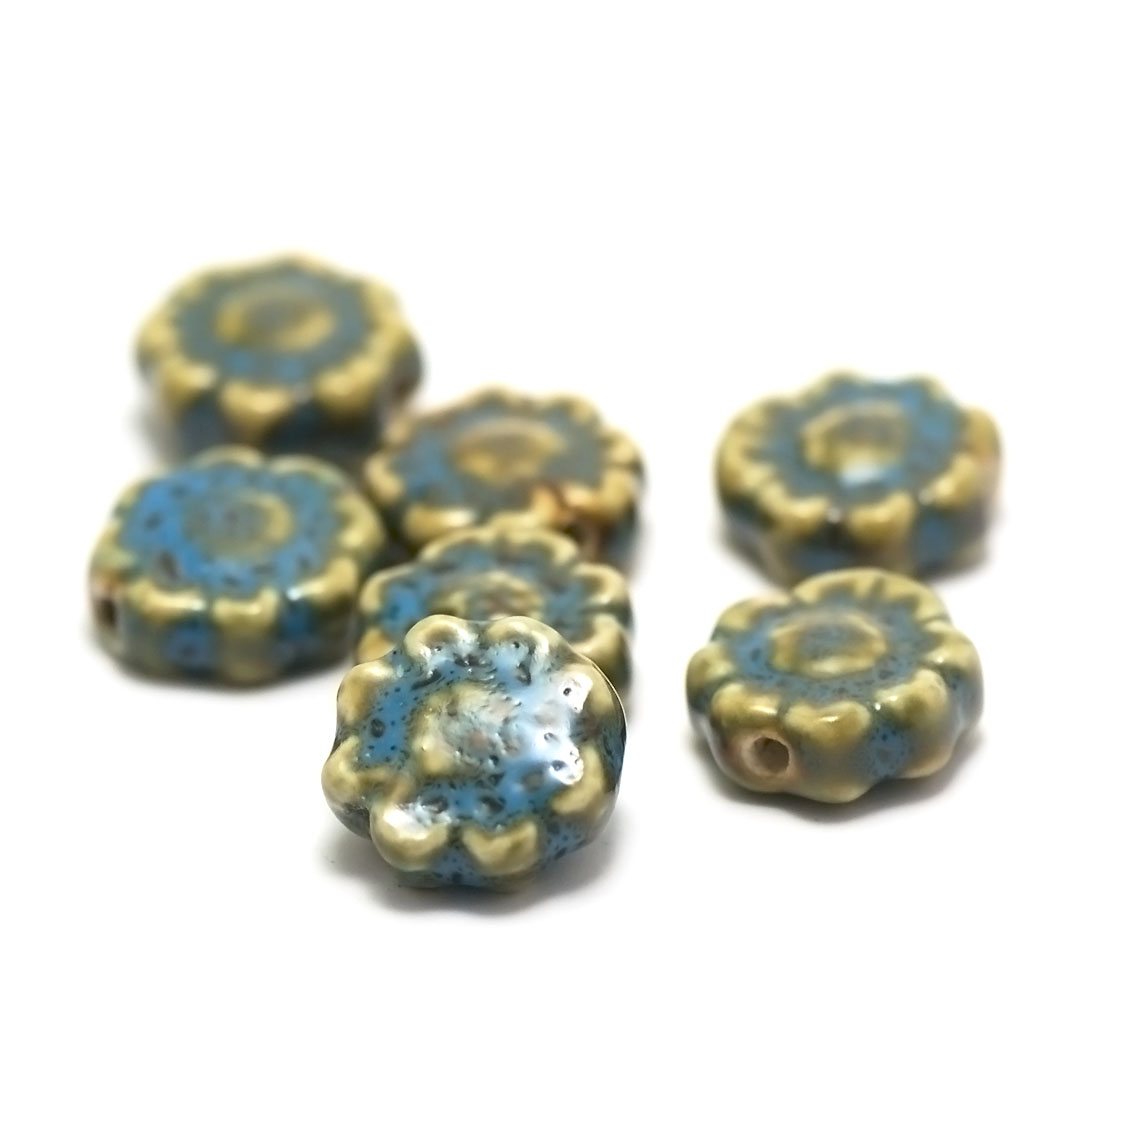 4 perles porcelaine/céramiques fleur 17x17x7 mm,bleu/jaune